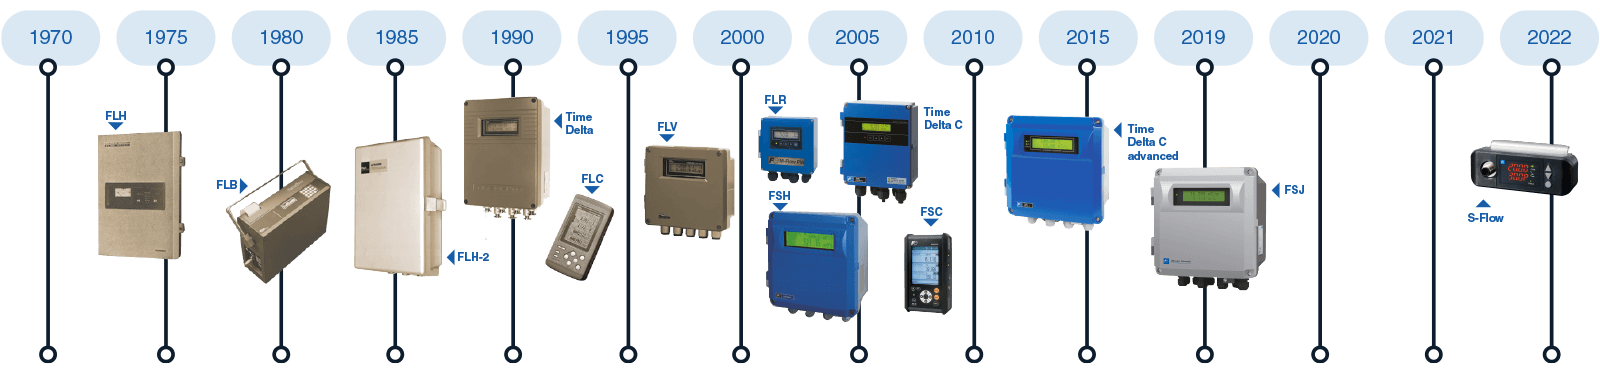 story of ultrasonic flow meters